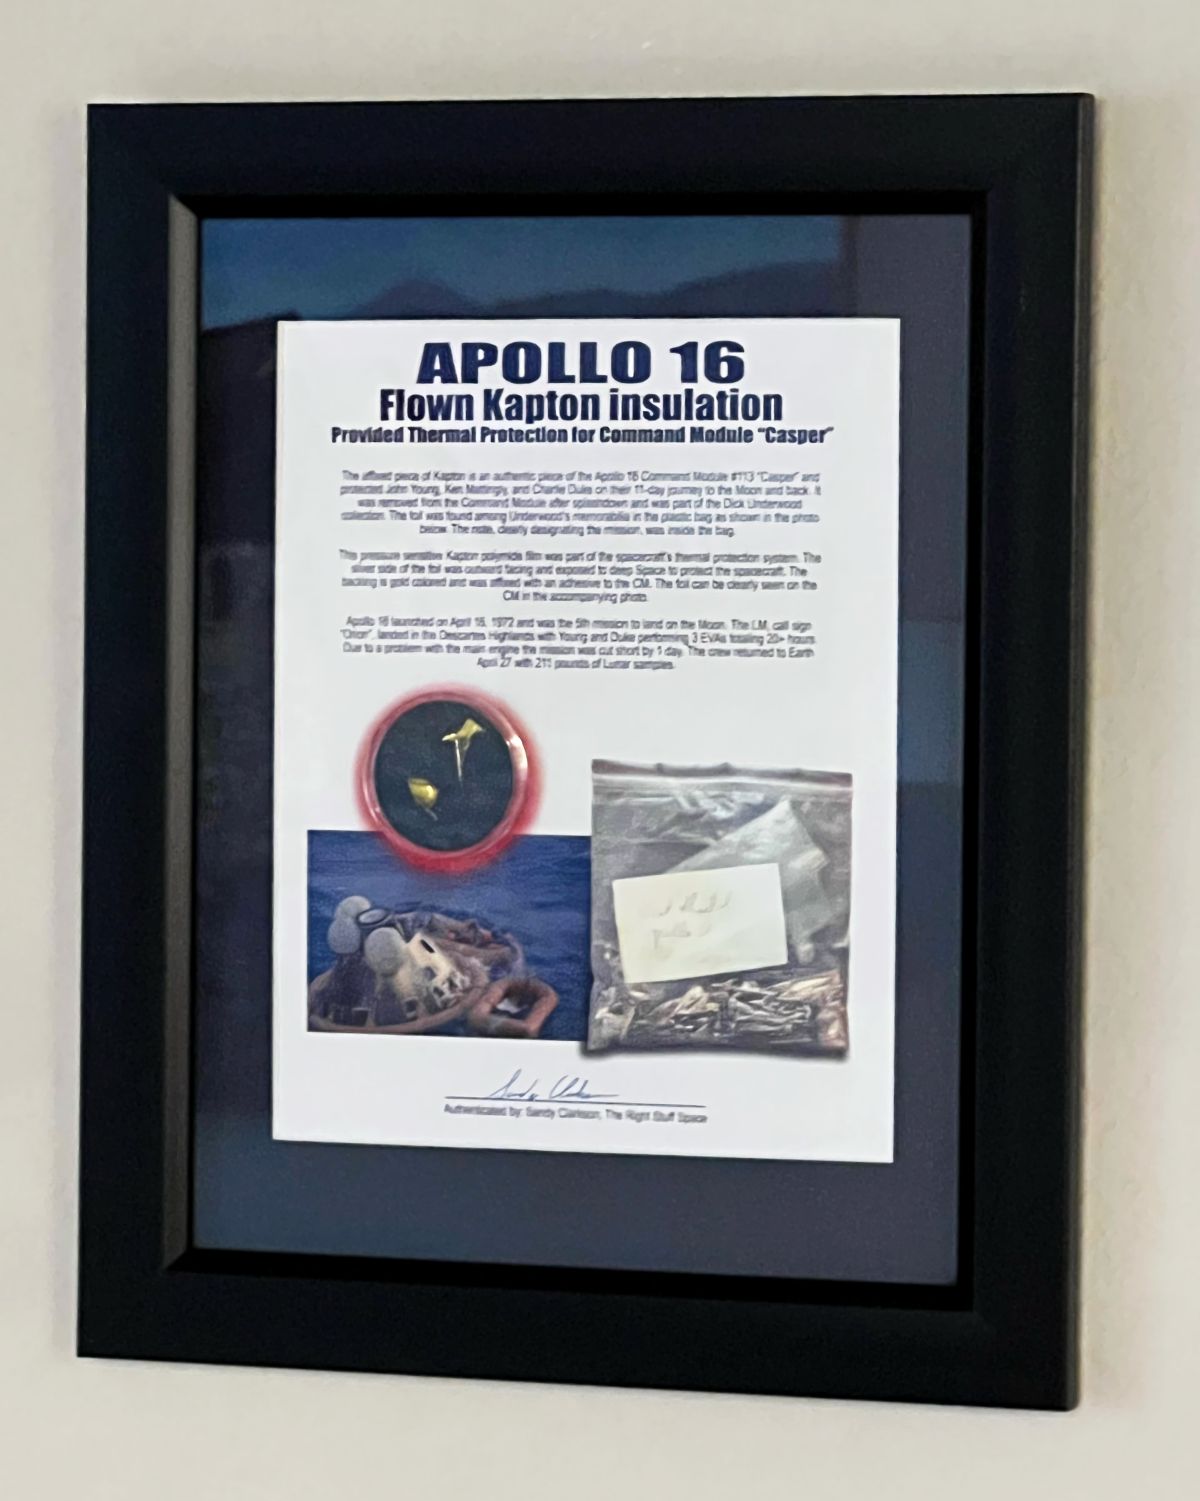 Apollo 16 Flown Kapton Insulation Framed Presentation - The Space Store